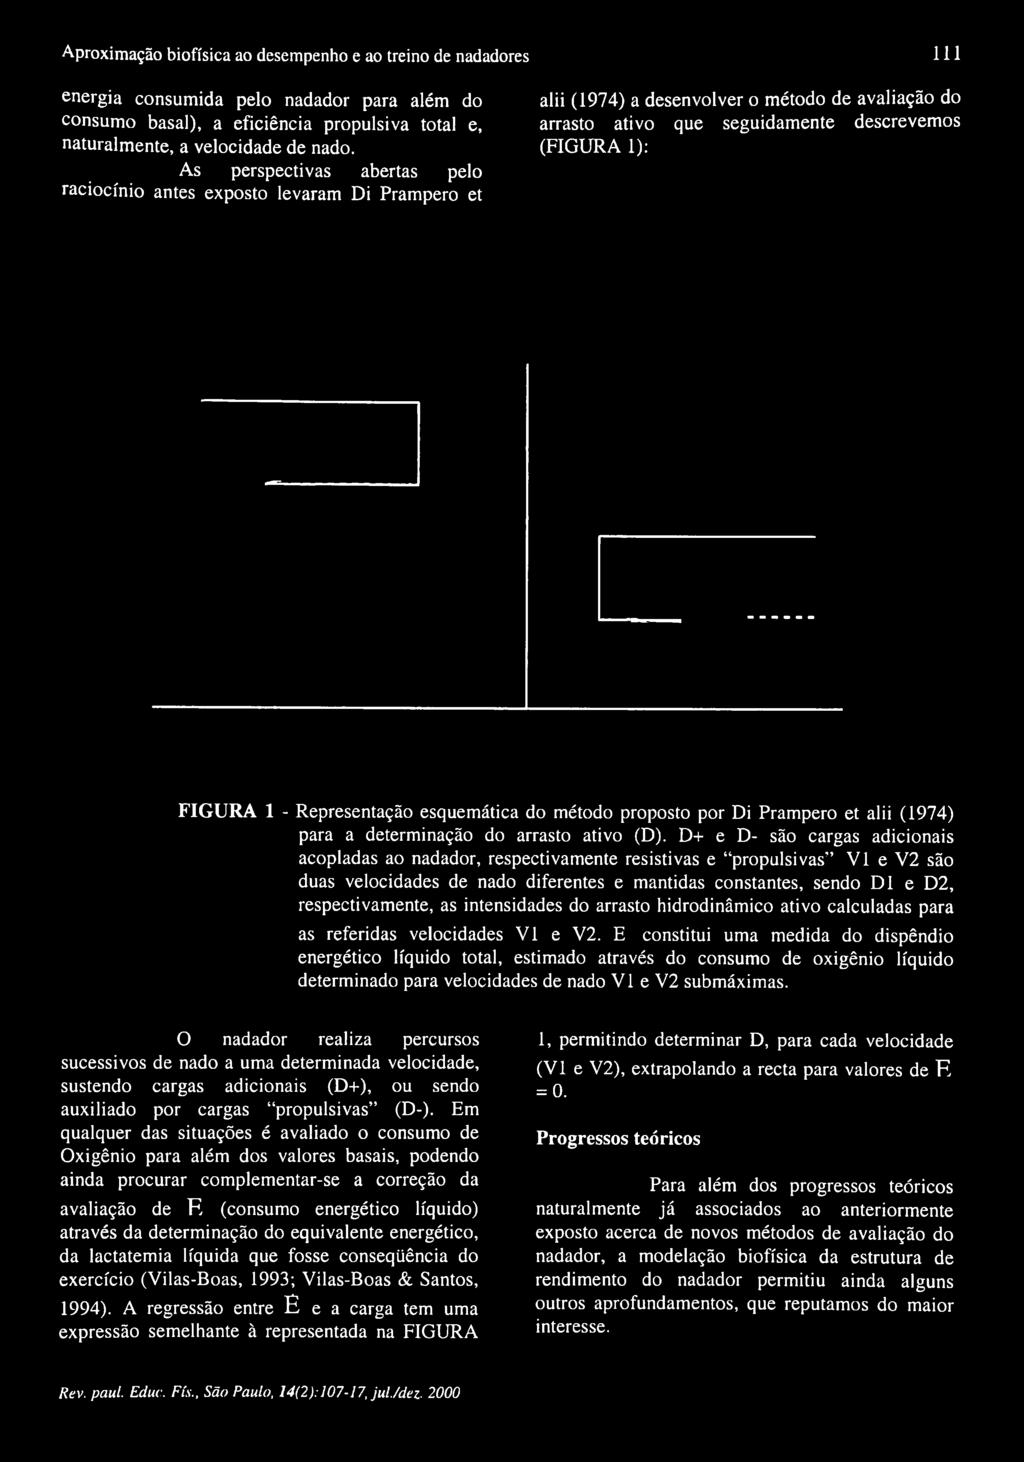 Representação esquemática do método proposto por Di Prampero et alii (1974) para a determinação do arrasto ativo (D).